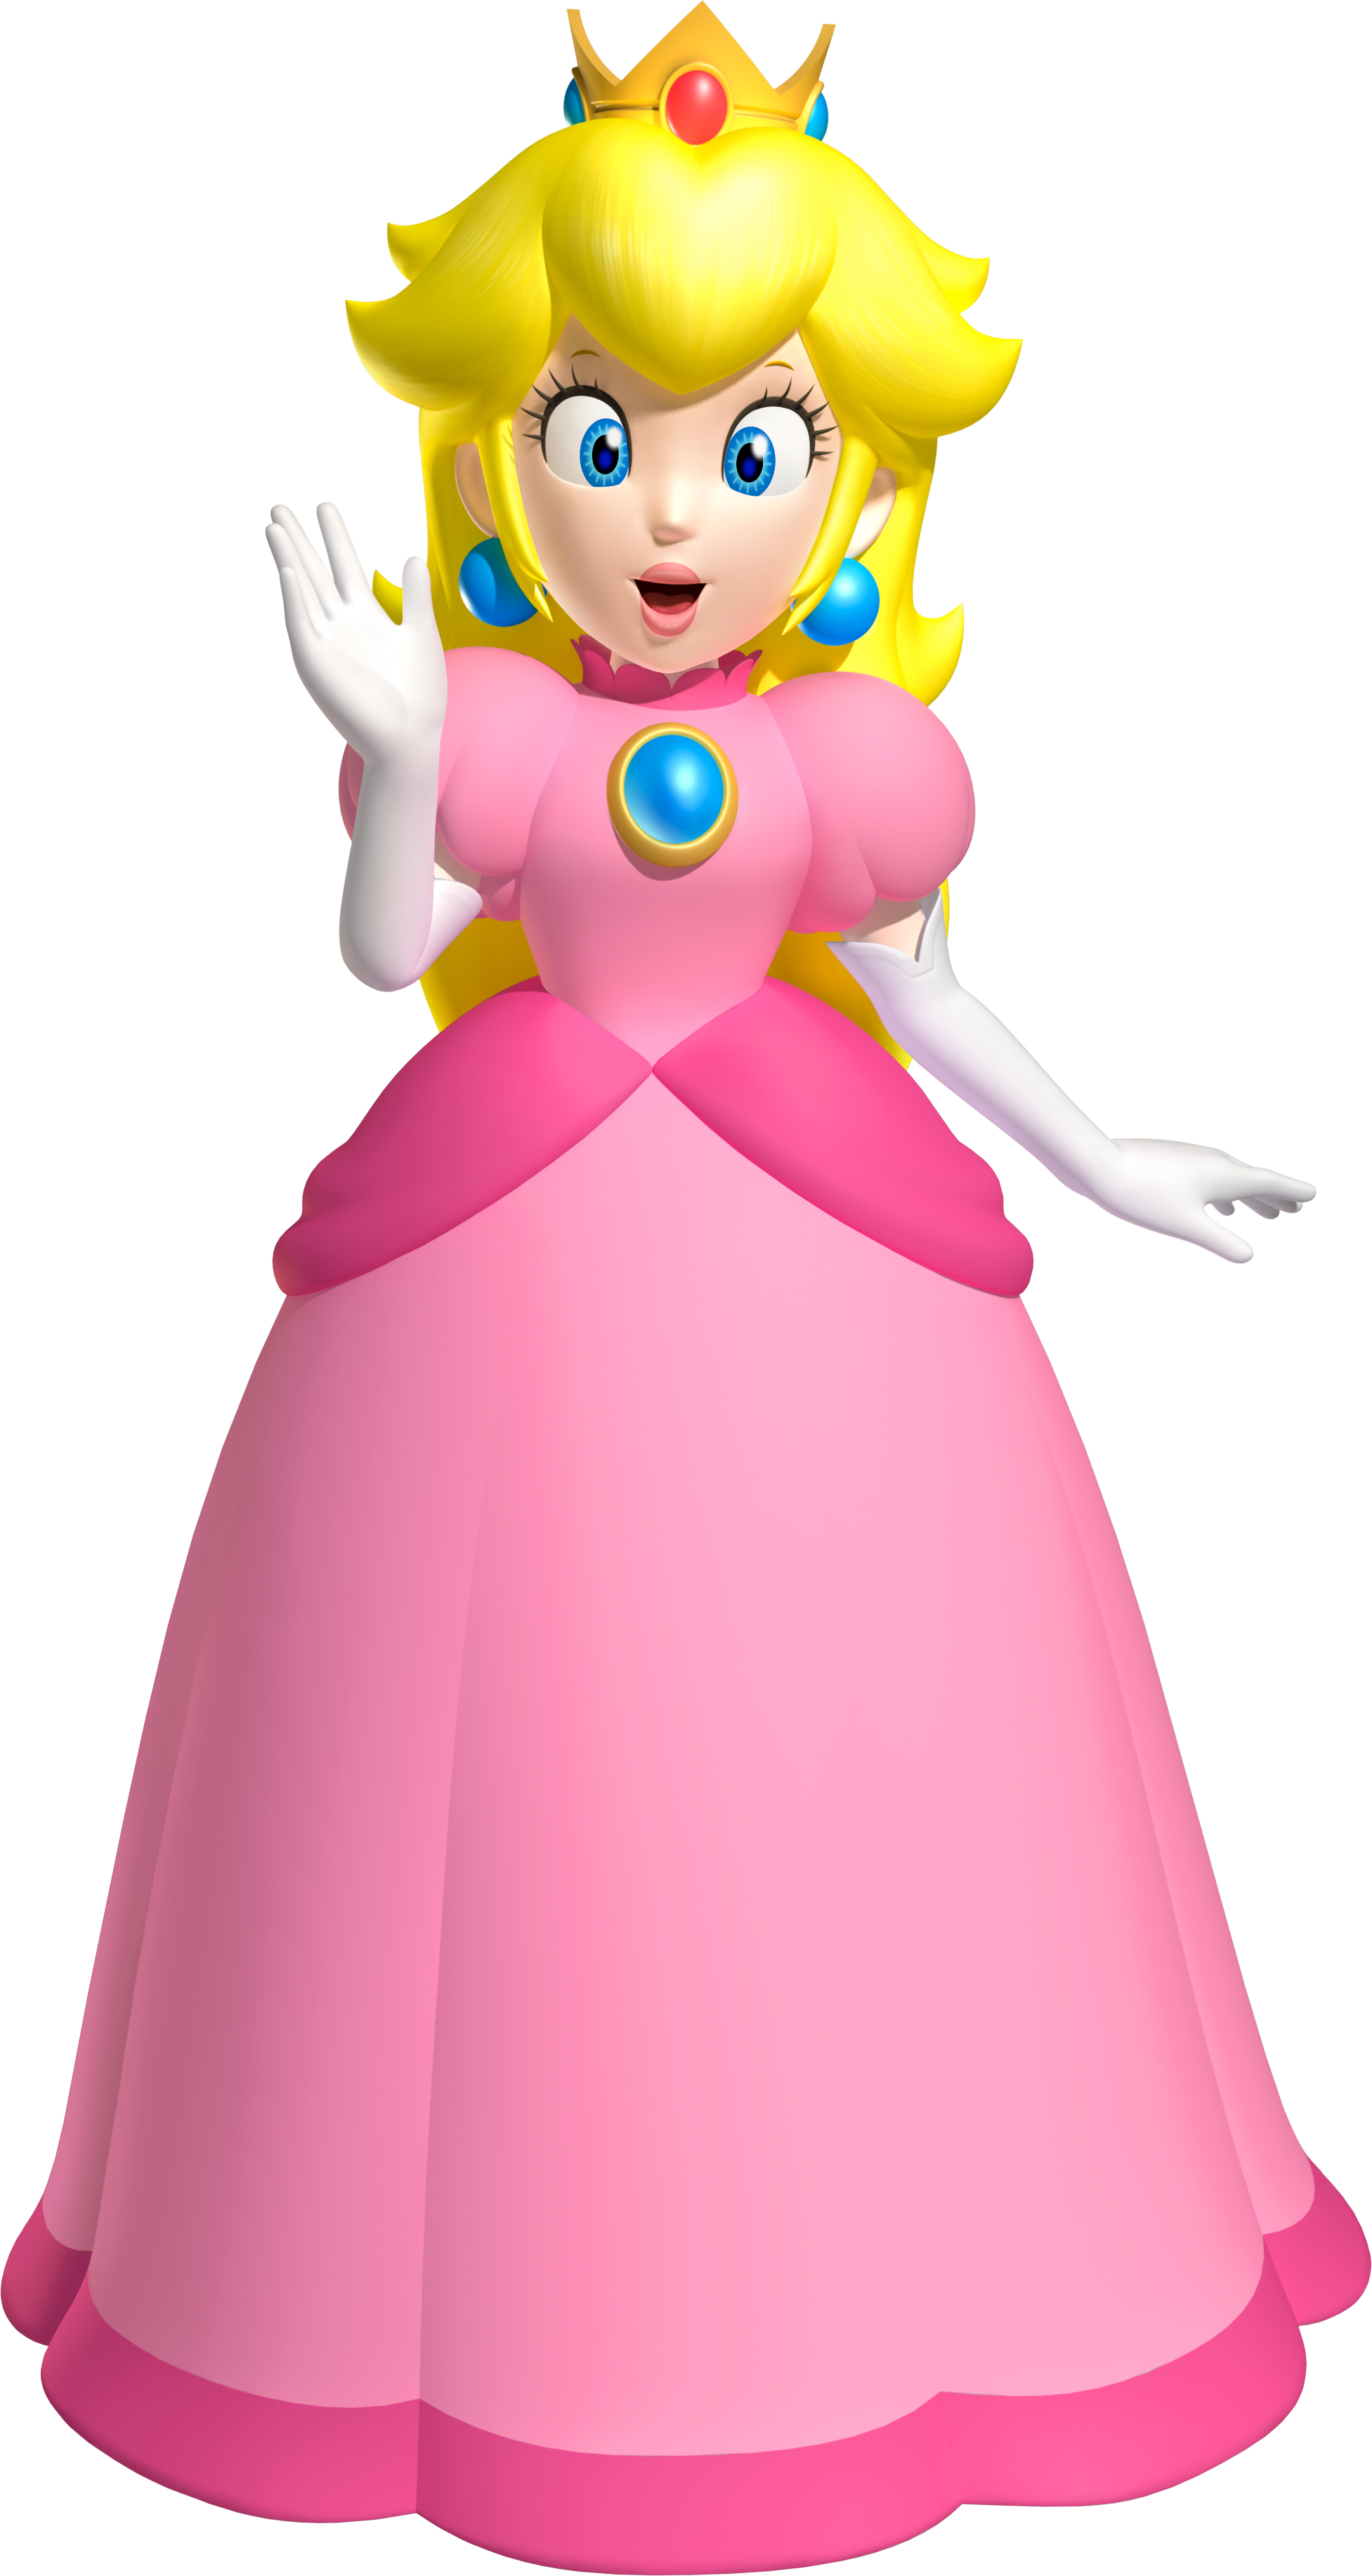 Princess Peach - Super Mario Wiki, the Mario encyclopedia